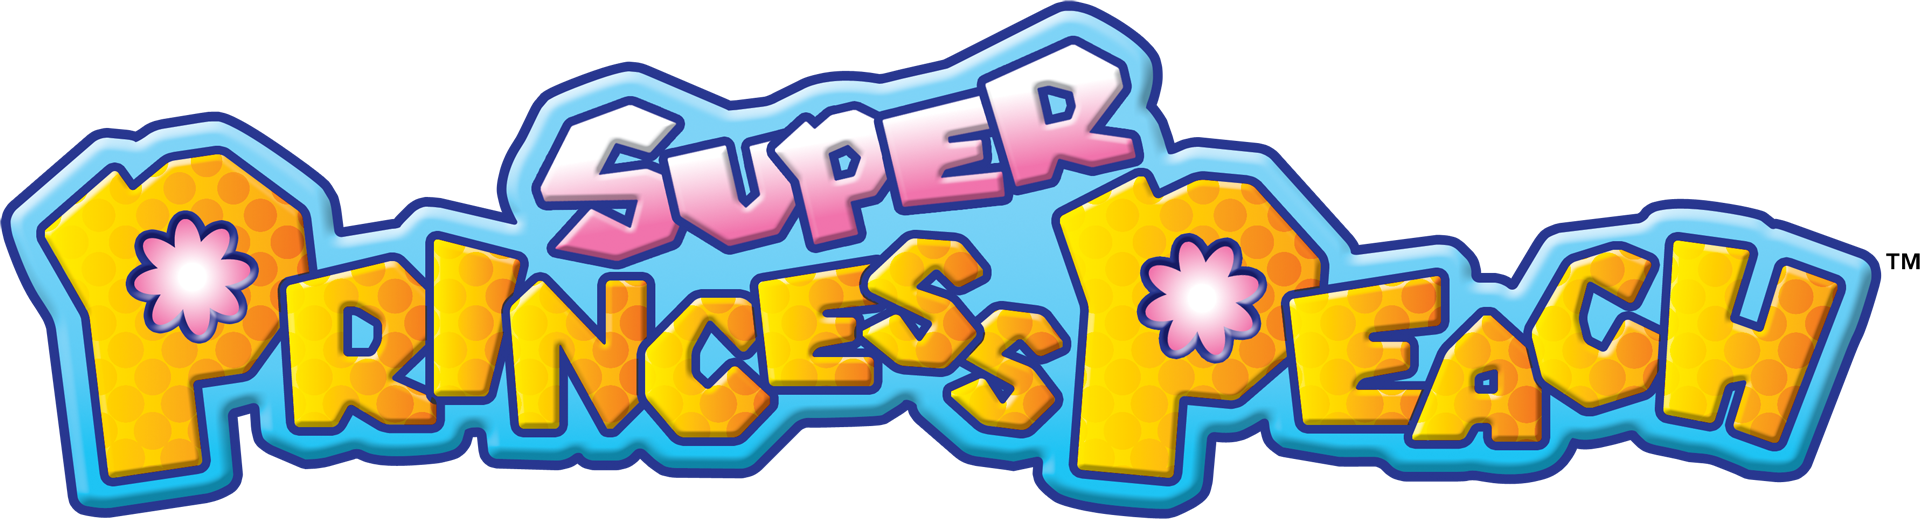 Super Mario Bros - Peaches (Letra)